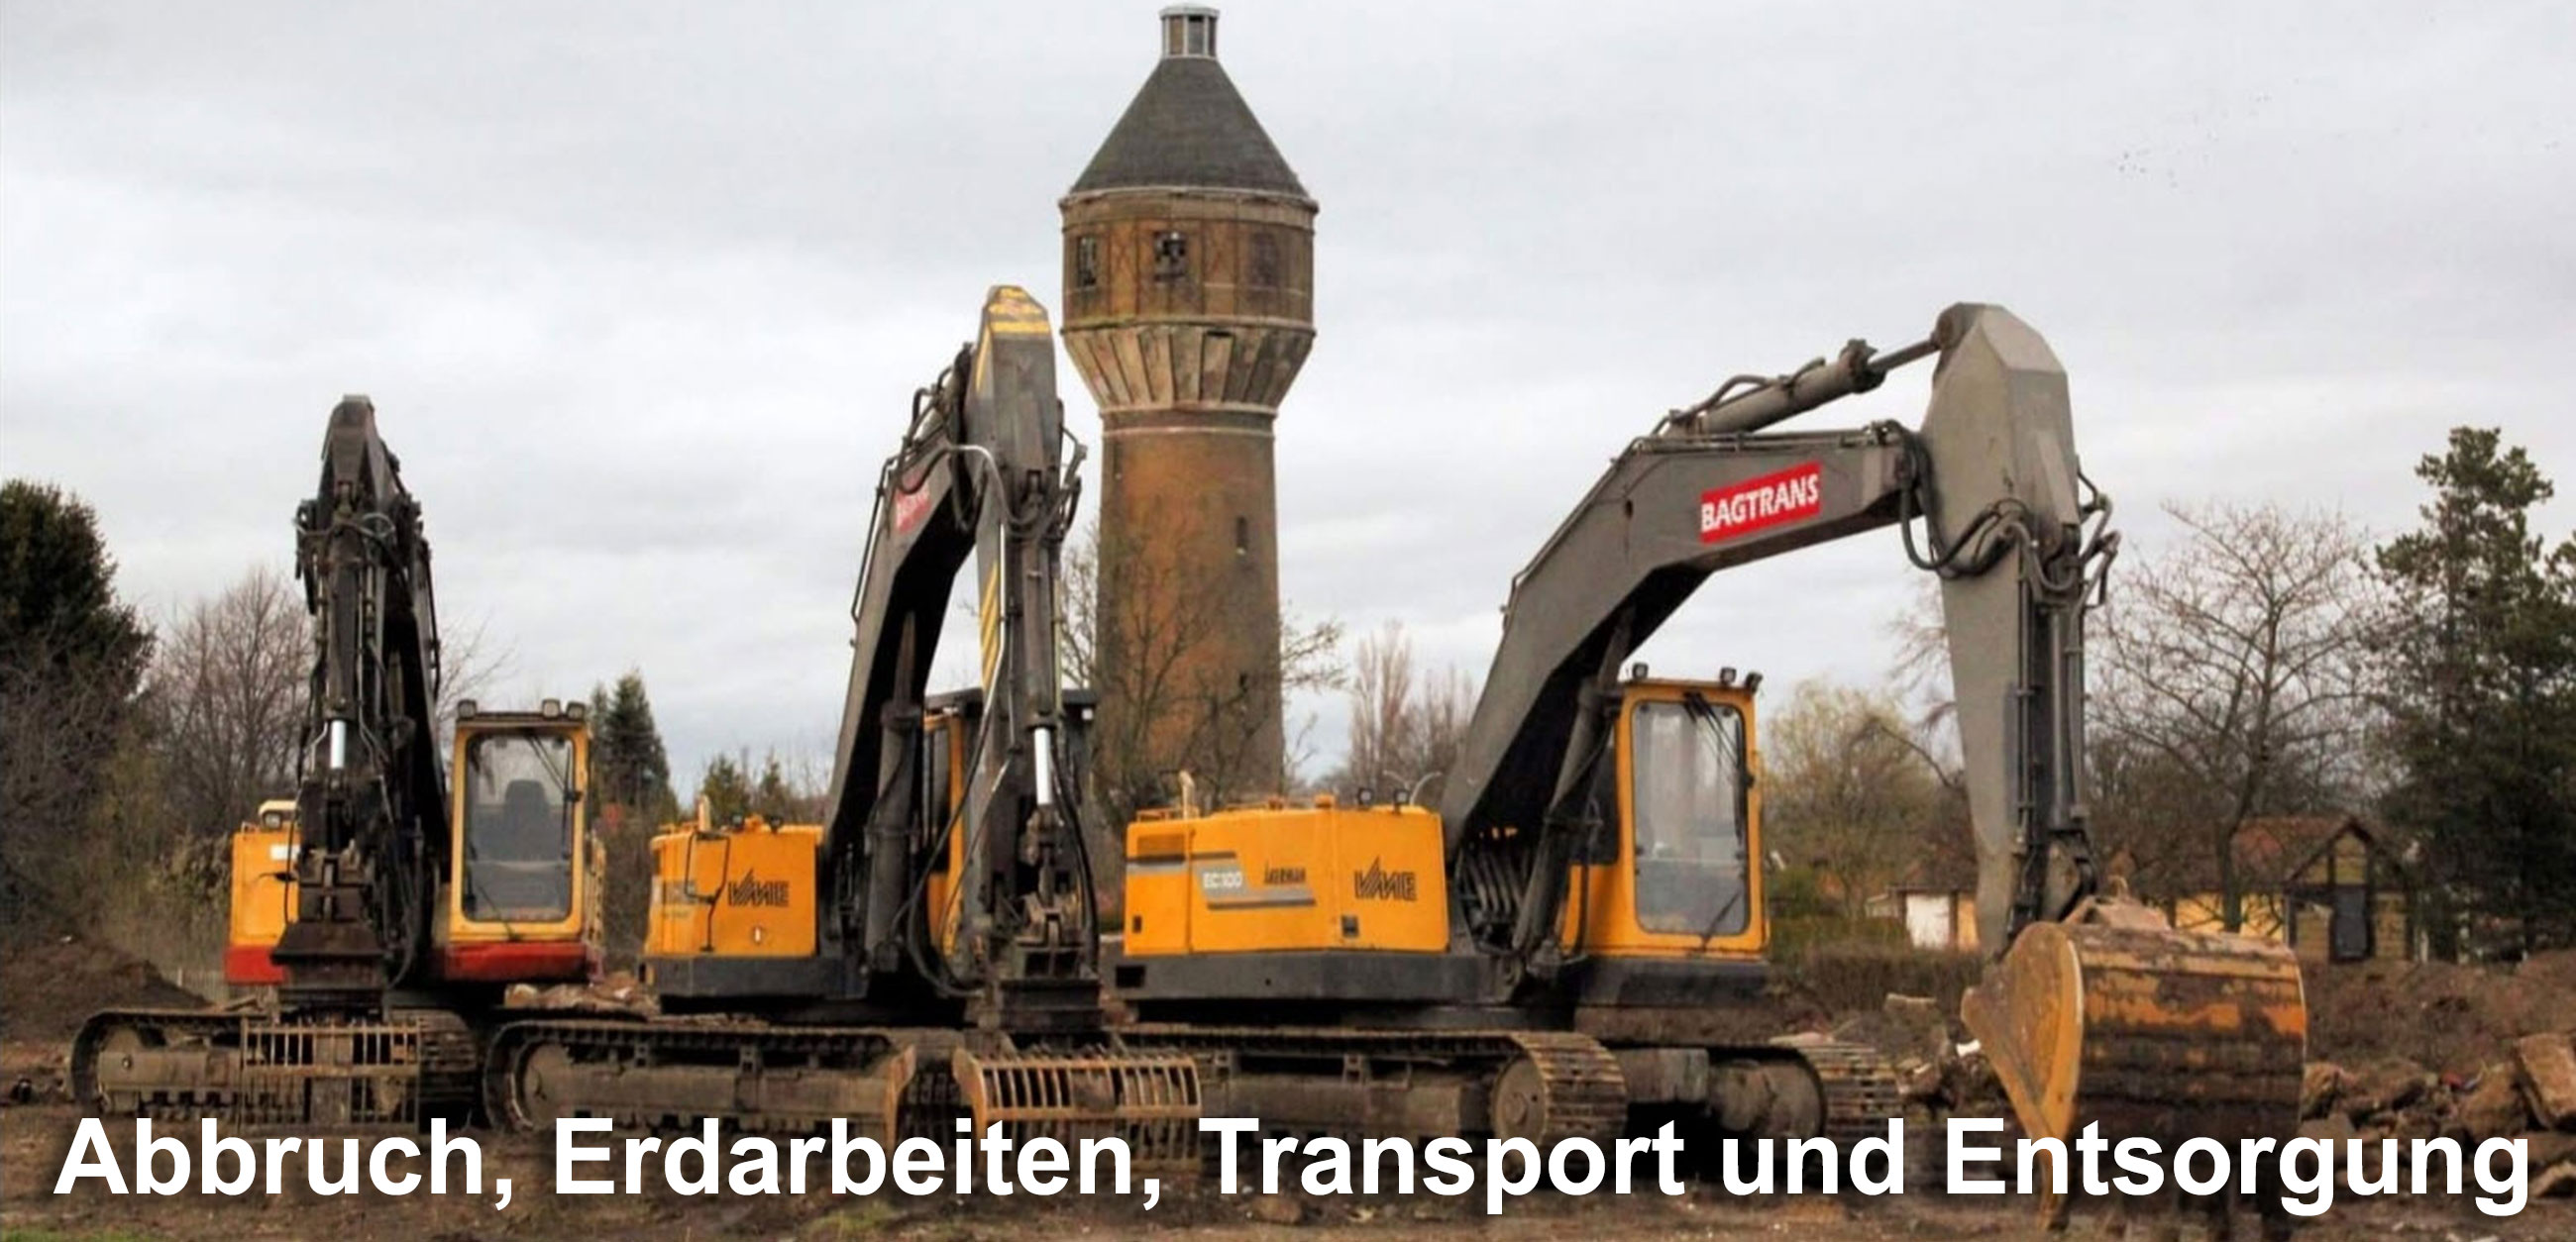 Bagtrans GmbH, Abbruch, Entsorgung, Transporte, Delitzsch, Leipzig, Halle